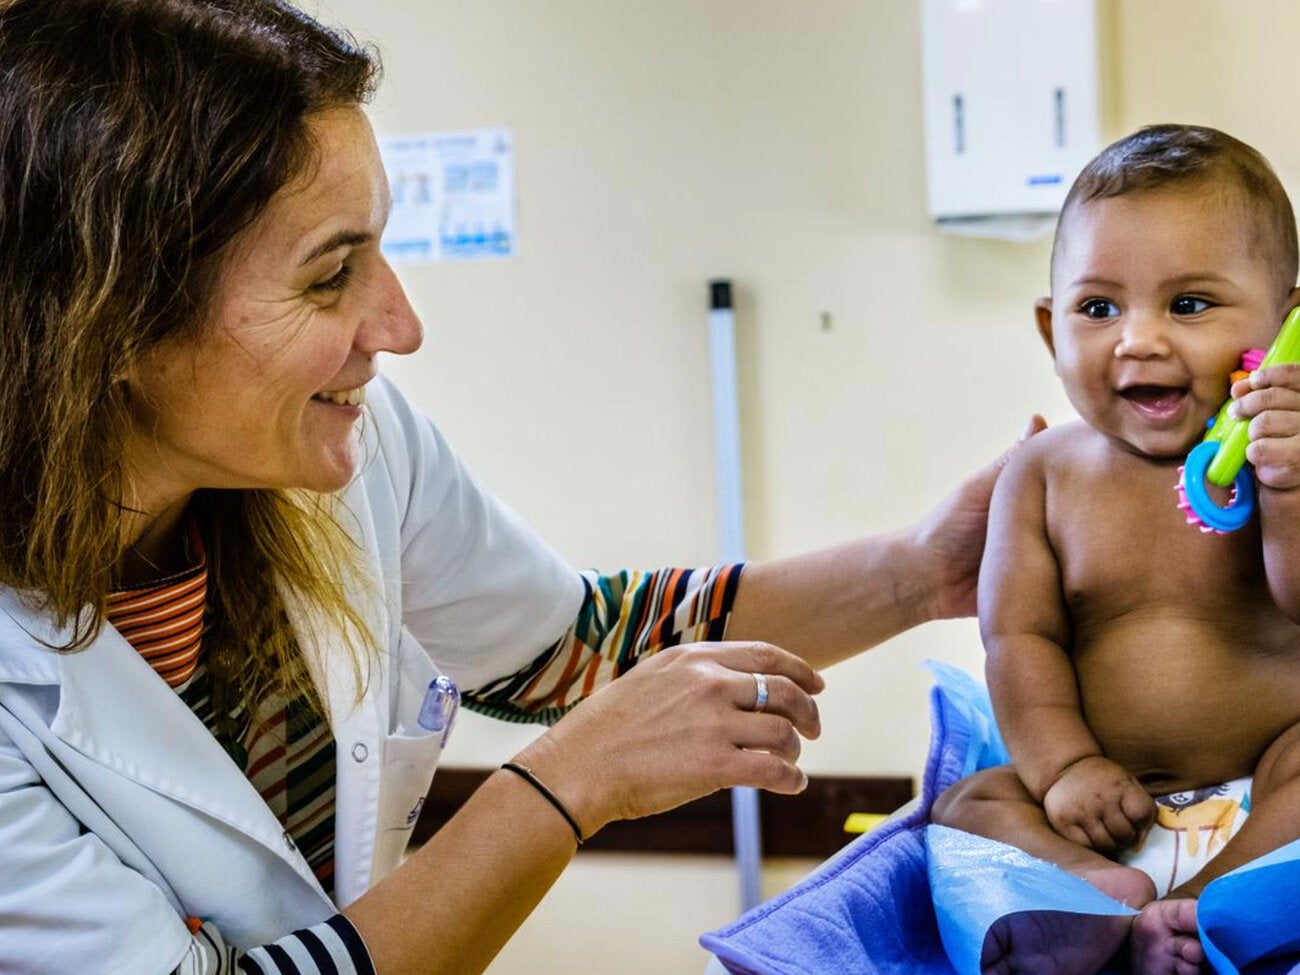 WHO/UNICEF Immunization Coverage Estimates